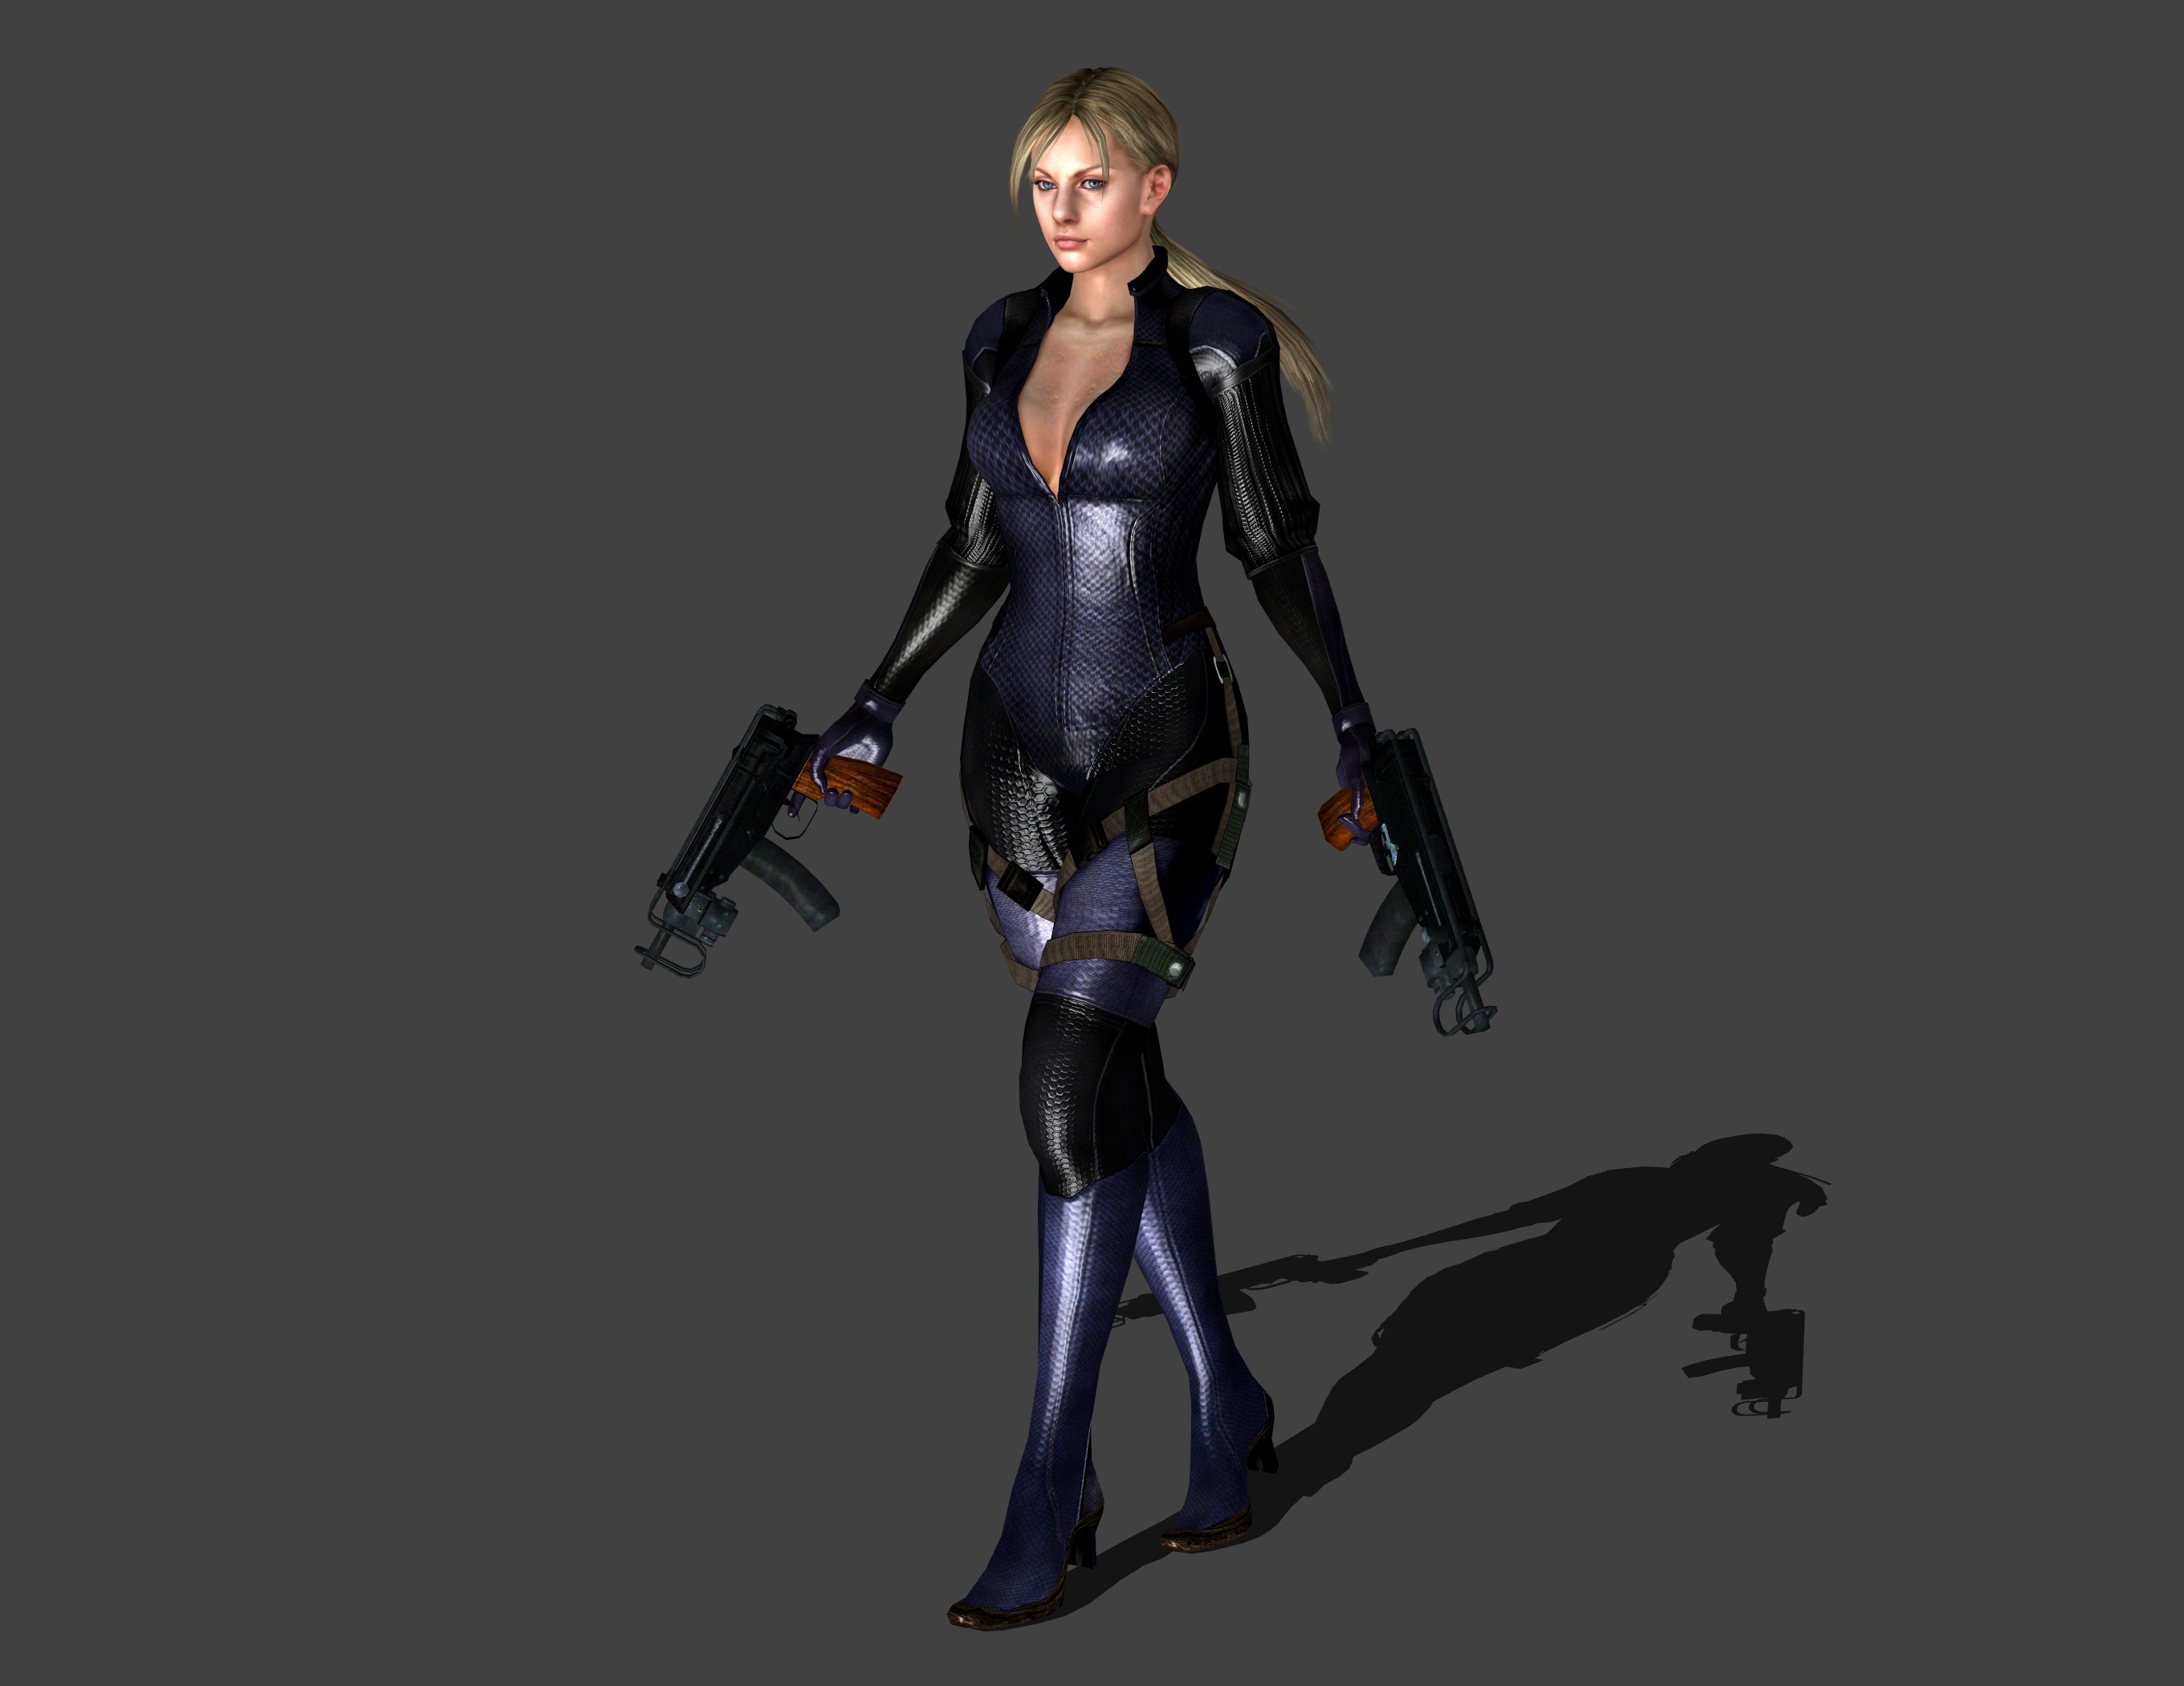 2721x2100 ... Resident Evil 5 - Jill Valentine MG Stand by IshikaHiruma